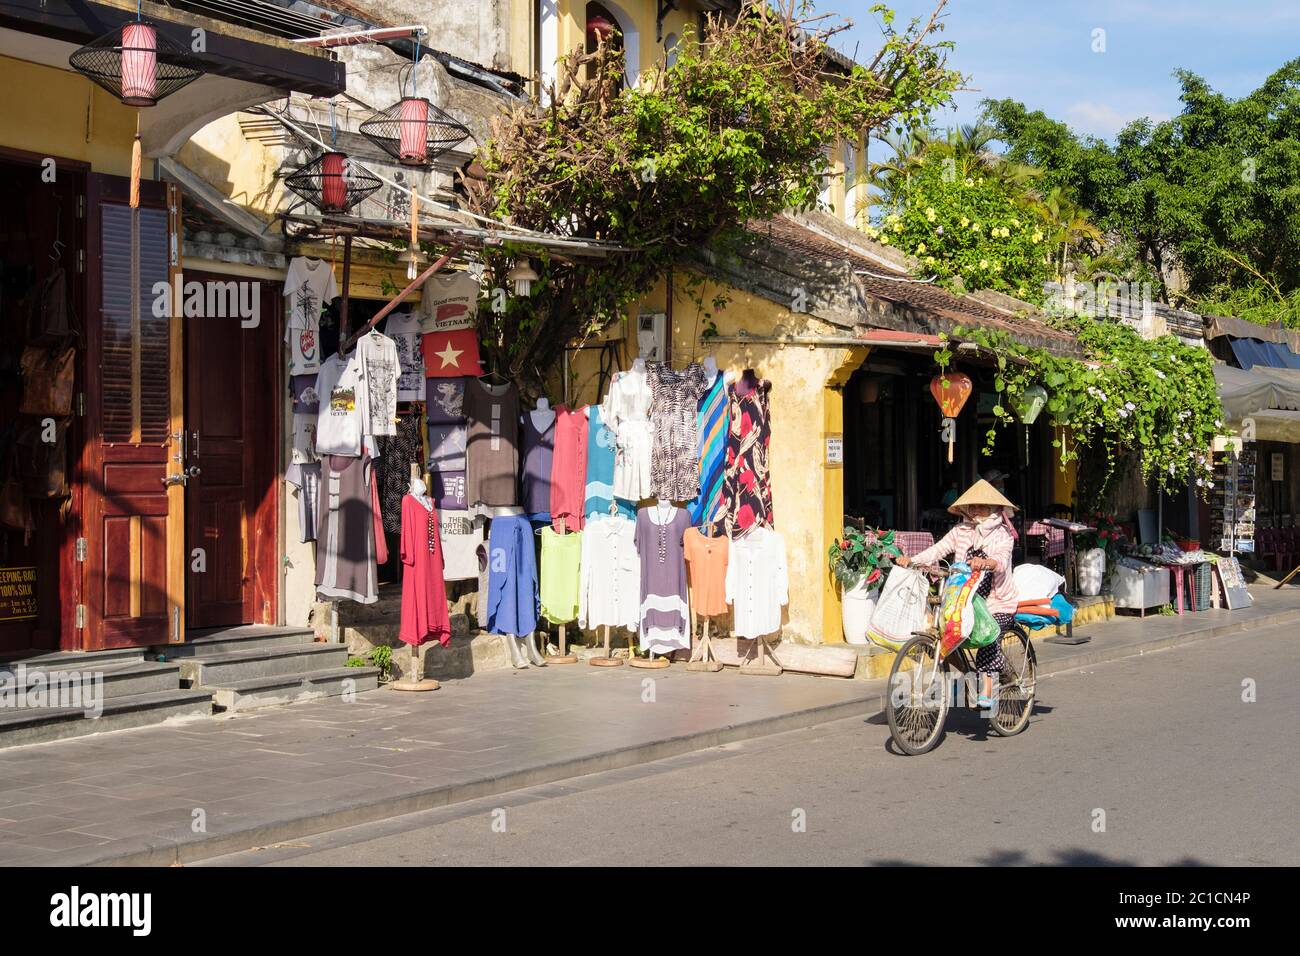 Negozio di abbigliamento con donne locali in bicicletta passato sulla strada nel quartiere vecchio della città storica. Hoi An, Provincia di Quang Nam, Vietnam, Asia Foto Stock